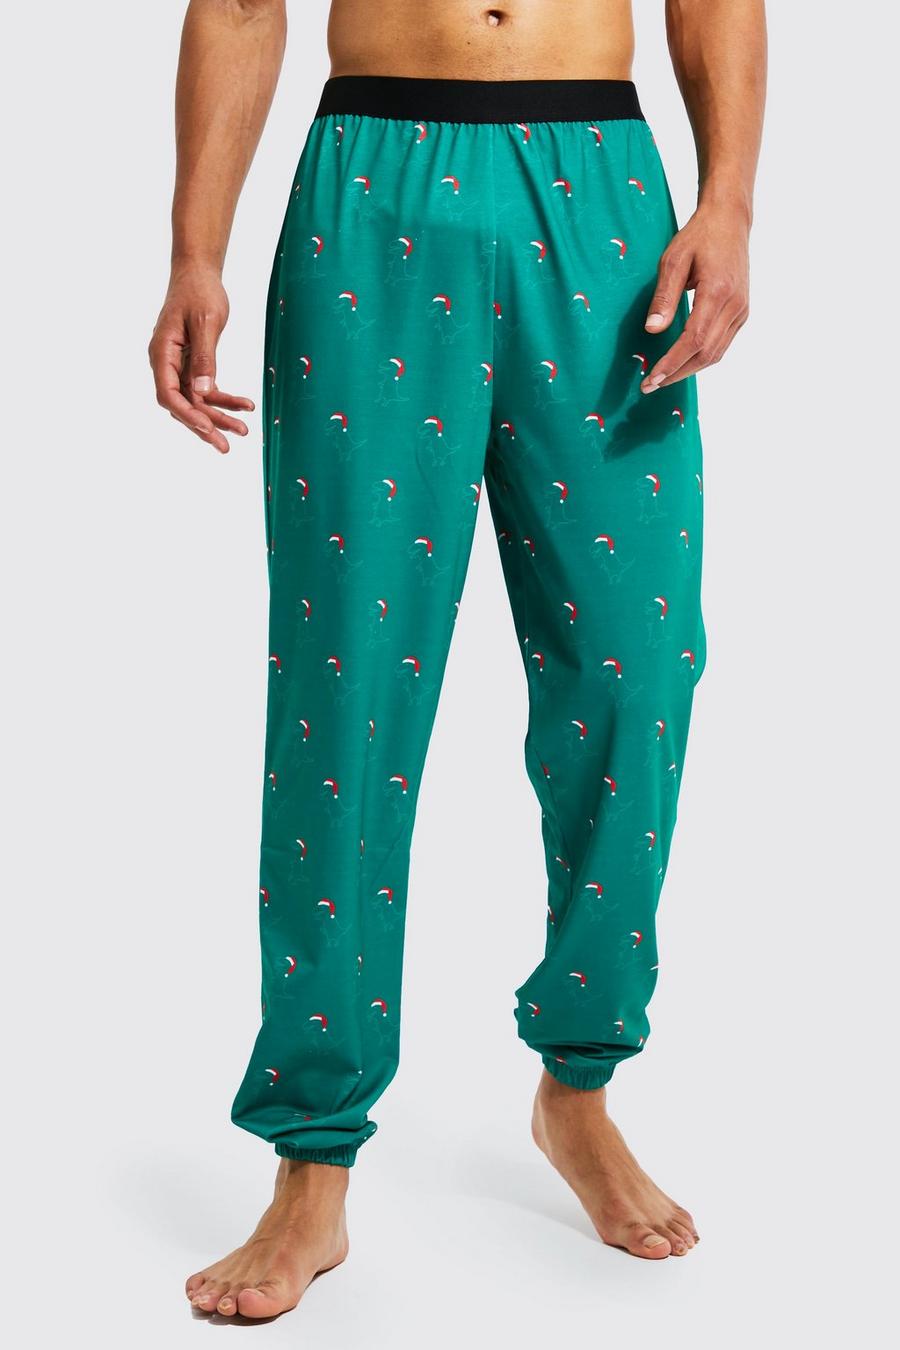 Pantalón deportivo Tall para estar en casa navideño con estampado de dinosaurios, Green image number 1